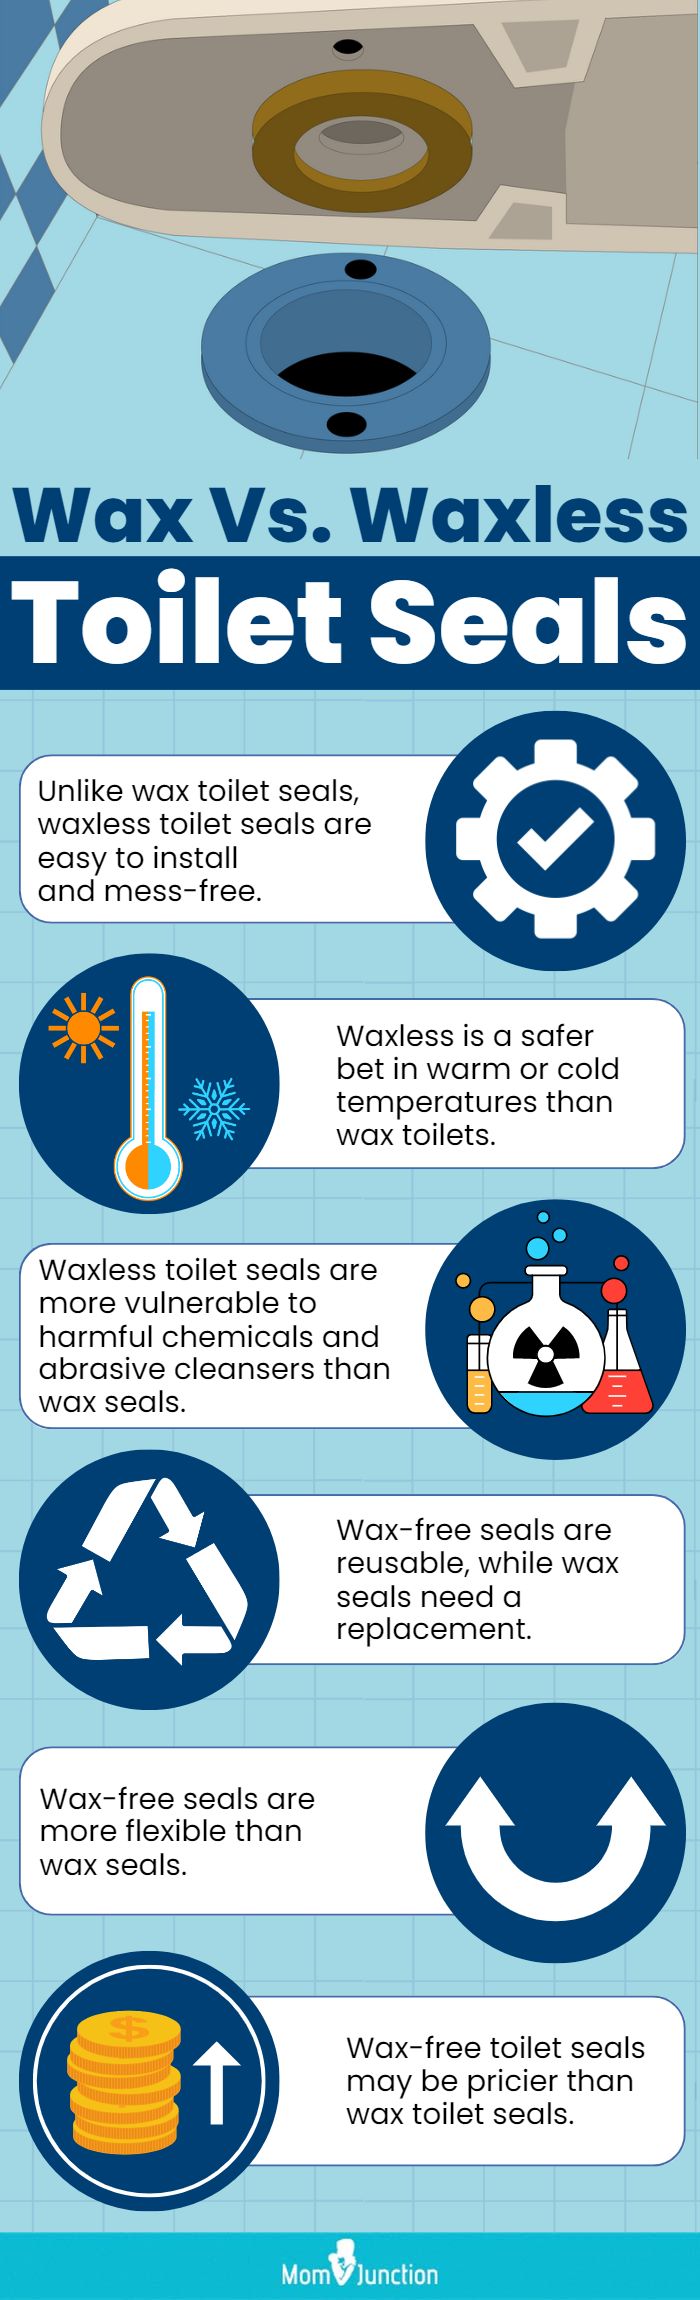 Wax Vs. Waxless Toilet Seals (Infographic)